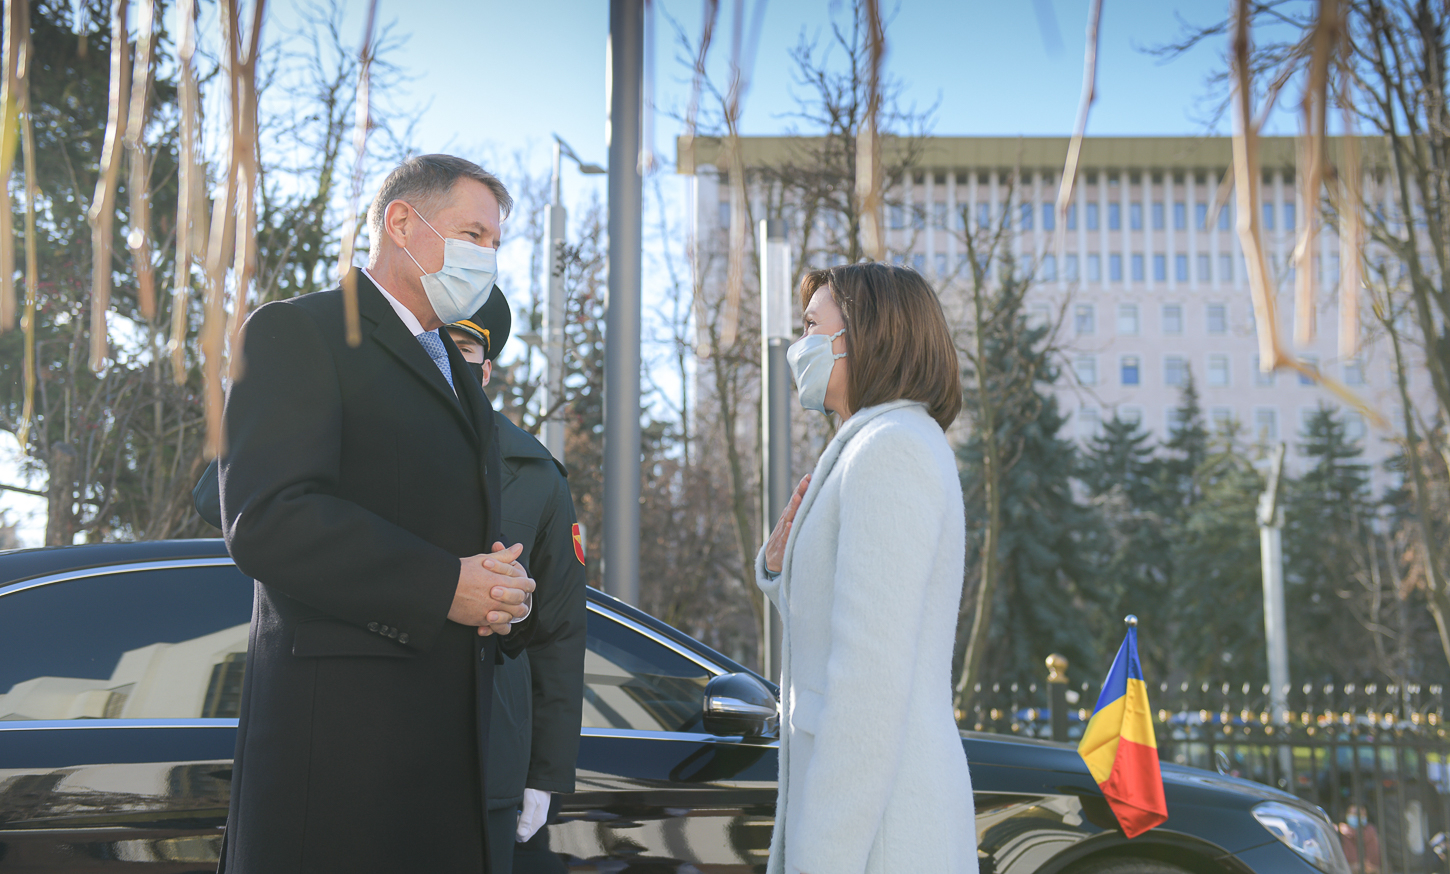 Kalus Iohannis tavaly decemberi moldovai látogatásán | Fotó: presidency.ro 